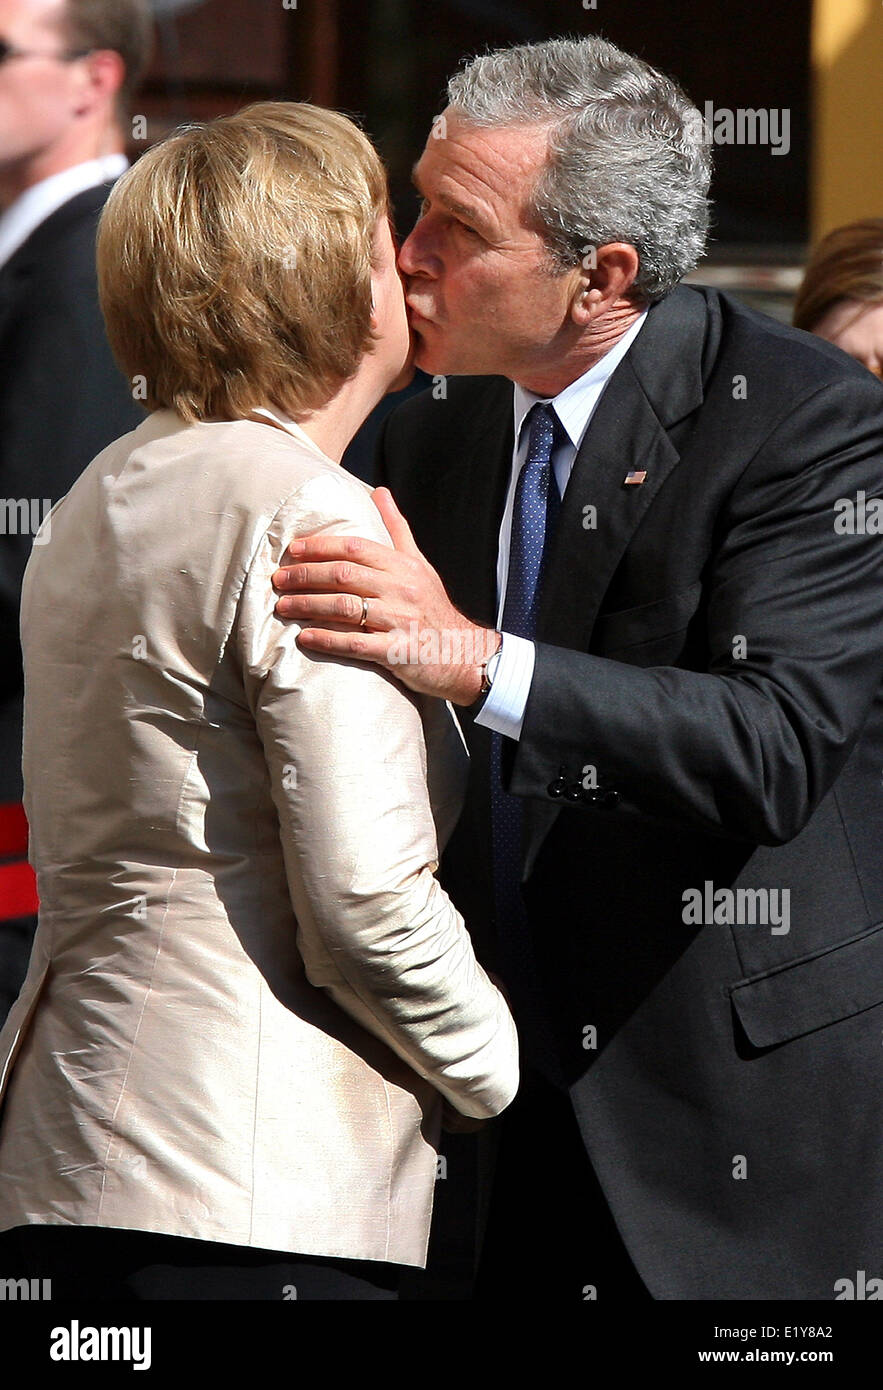 El presidente de EEUU, George W. Bush, la canciller alemana Angela Merkel besa la mejilla después de su llegada a Stralsund el 13 de julio de 2006. Foto de stock